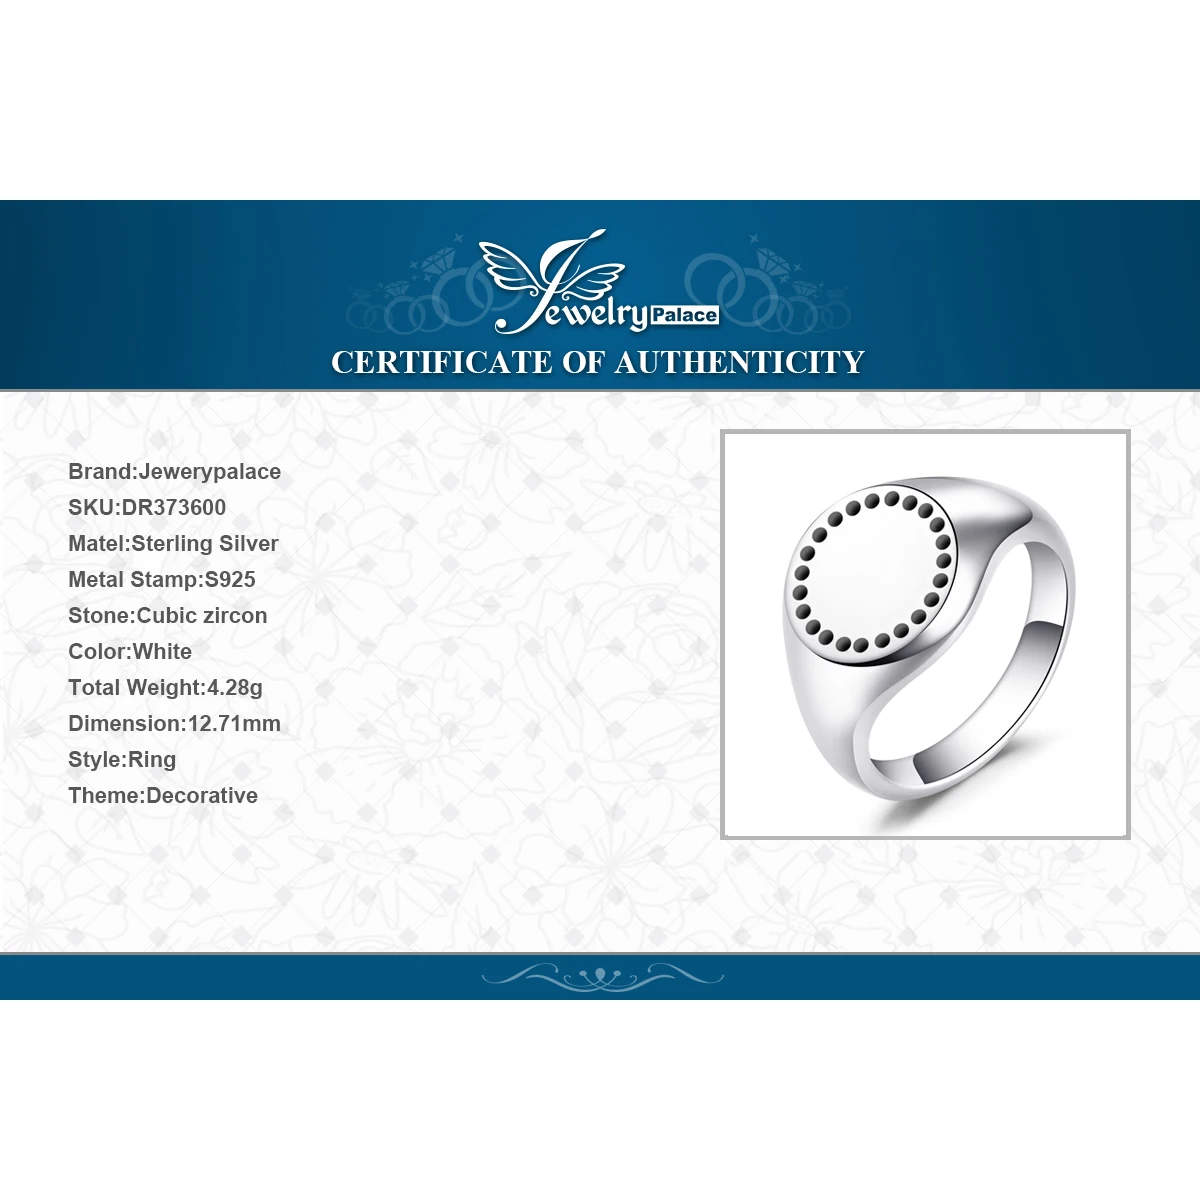 Jewelrypalace стерлингового серебра 925 radient элегантность перстень подарки для Для женщин Юбилей подарки Модные украшения Лидер продаж